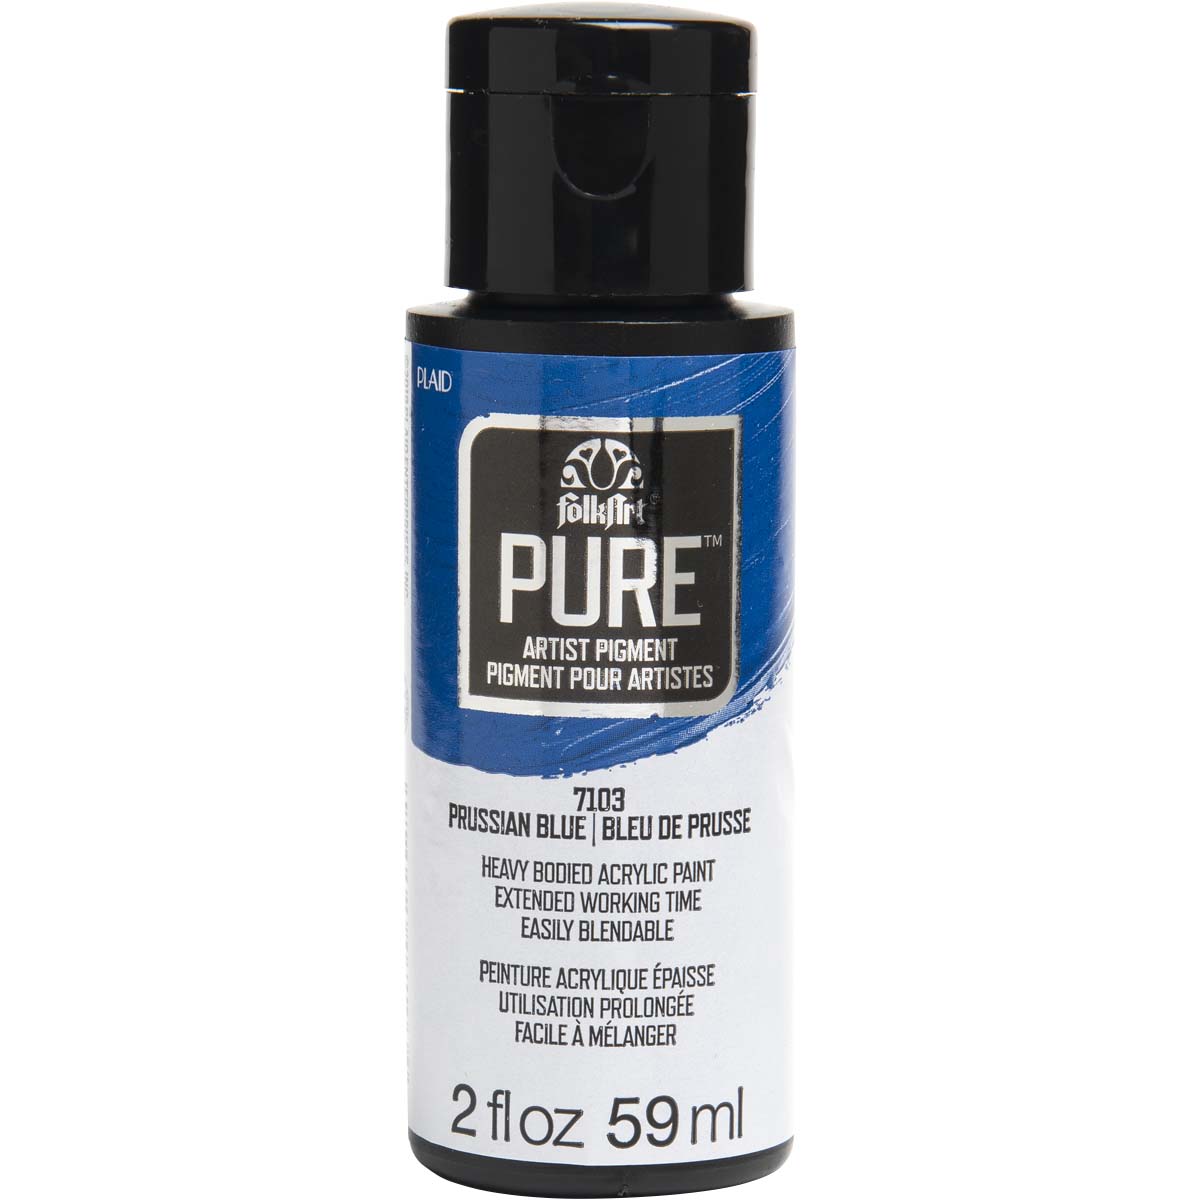 FolkArt ® Pure™ Artist Pigment - Prussian Blue, 2 oz. - 7103